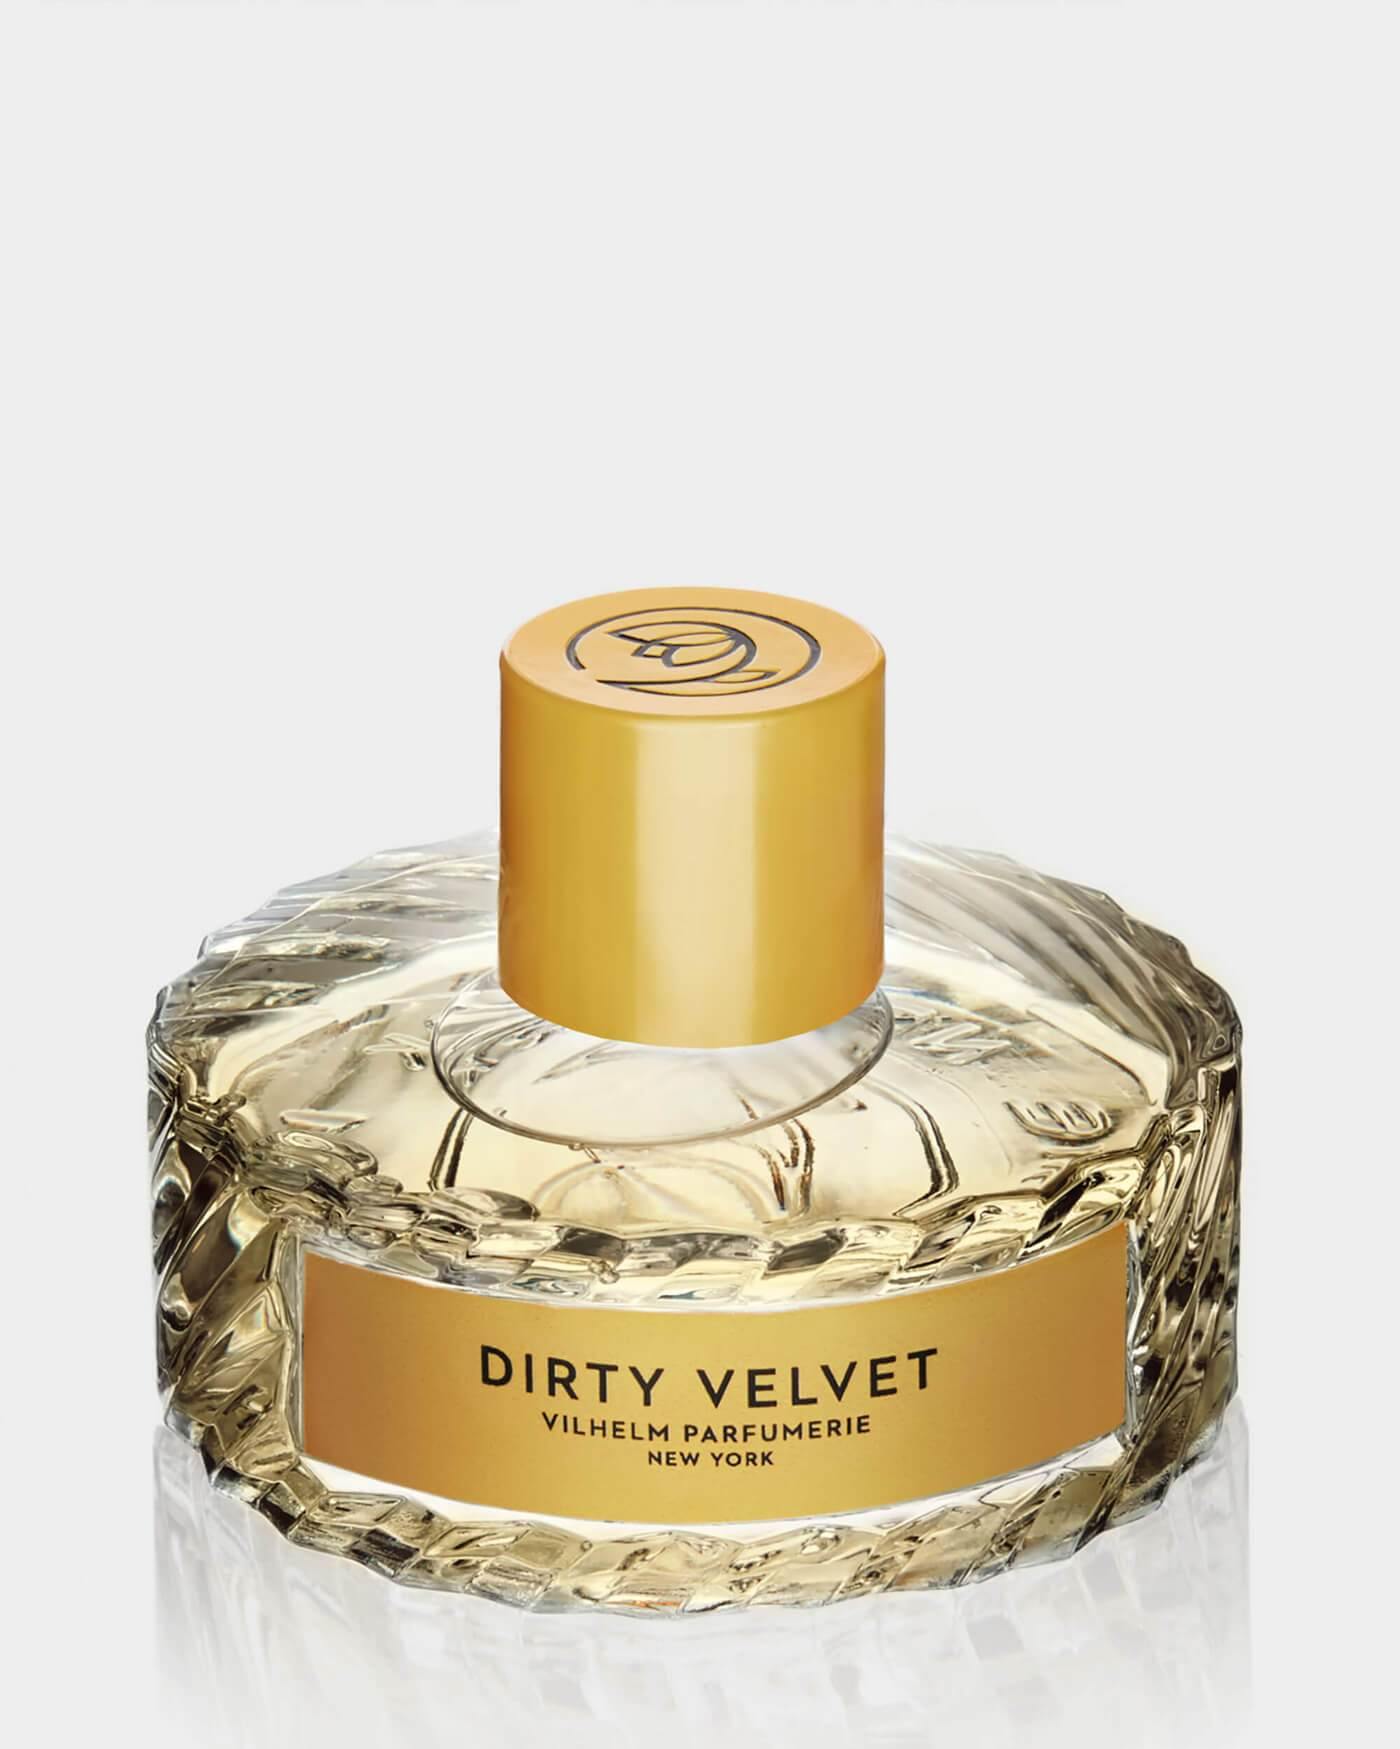 DIRTY VELVET - Vilhelm Parfumerie